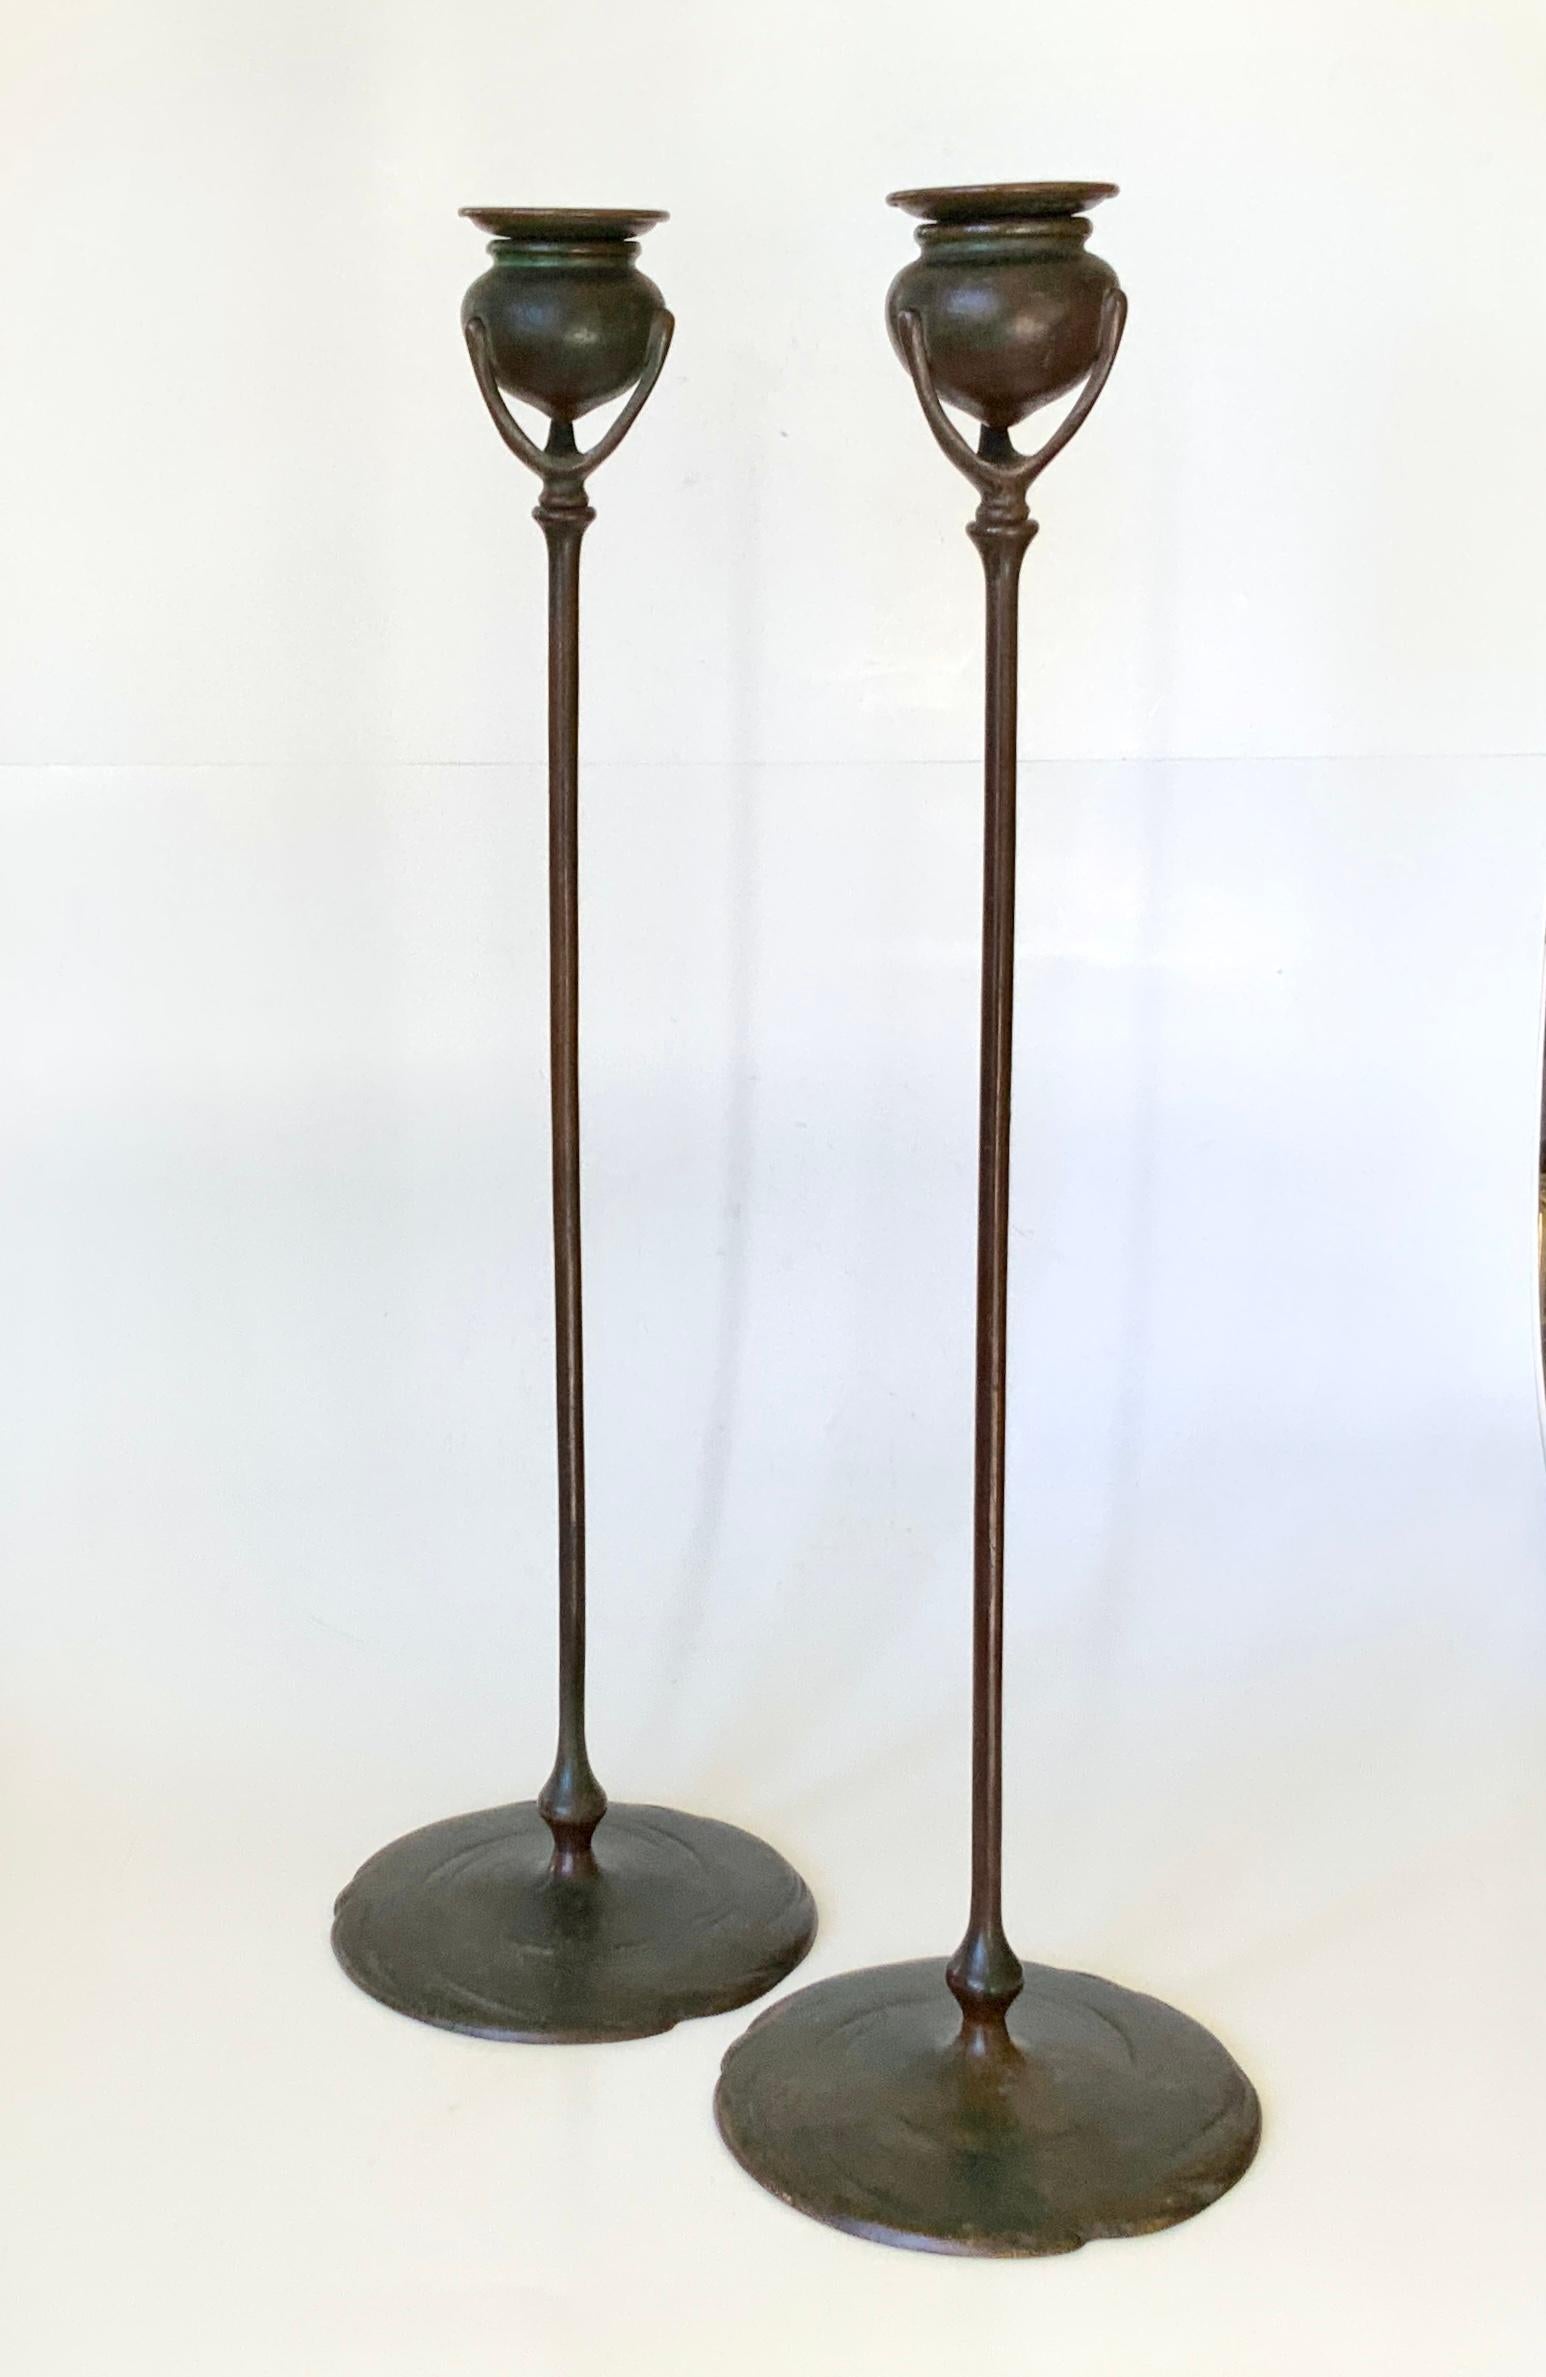 Une belle paire de grands chandeliers en bronze patiné des Studios Tiffany. Les chandeliers sont tous deux signés TIFFANY STUDIOS NEW YORK 1213. Il s'agit d'une paire ancienne, dont la finition patinée d'origine, brun rougeâtre et vert de Tiffany,